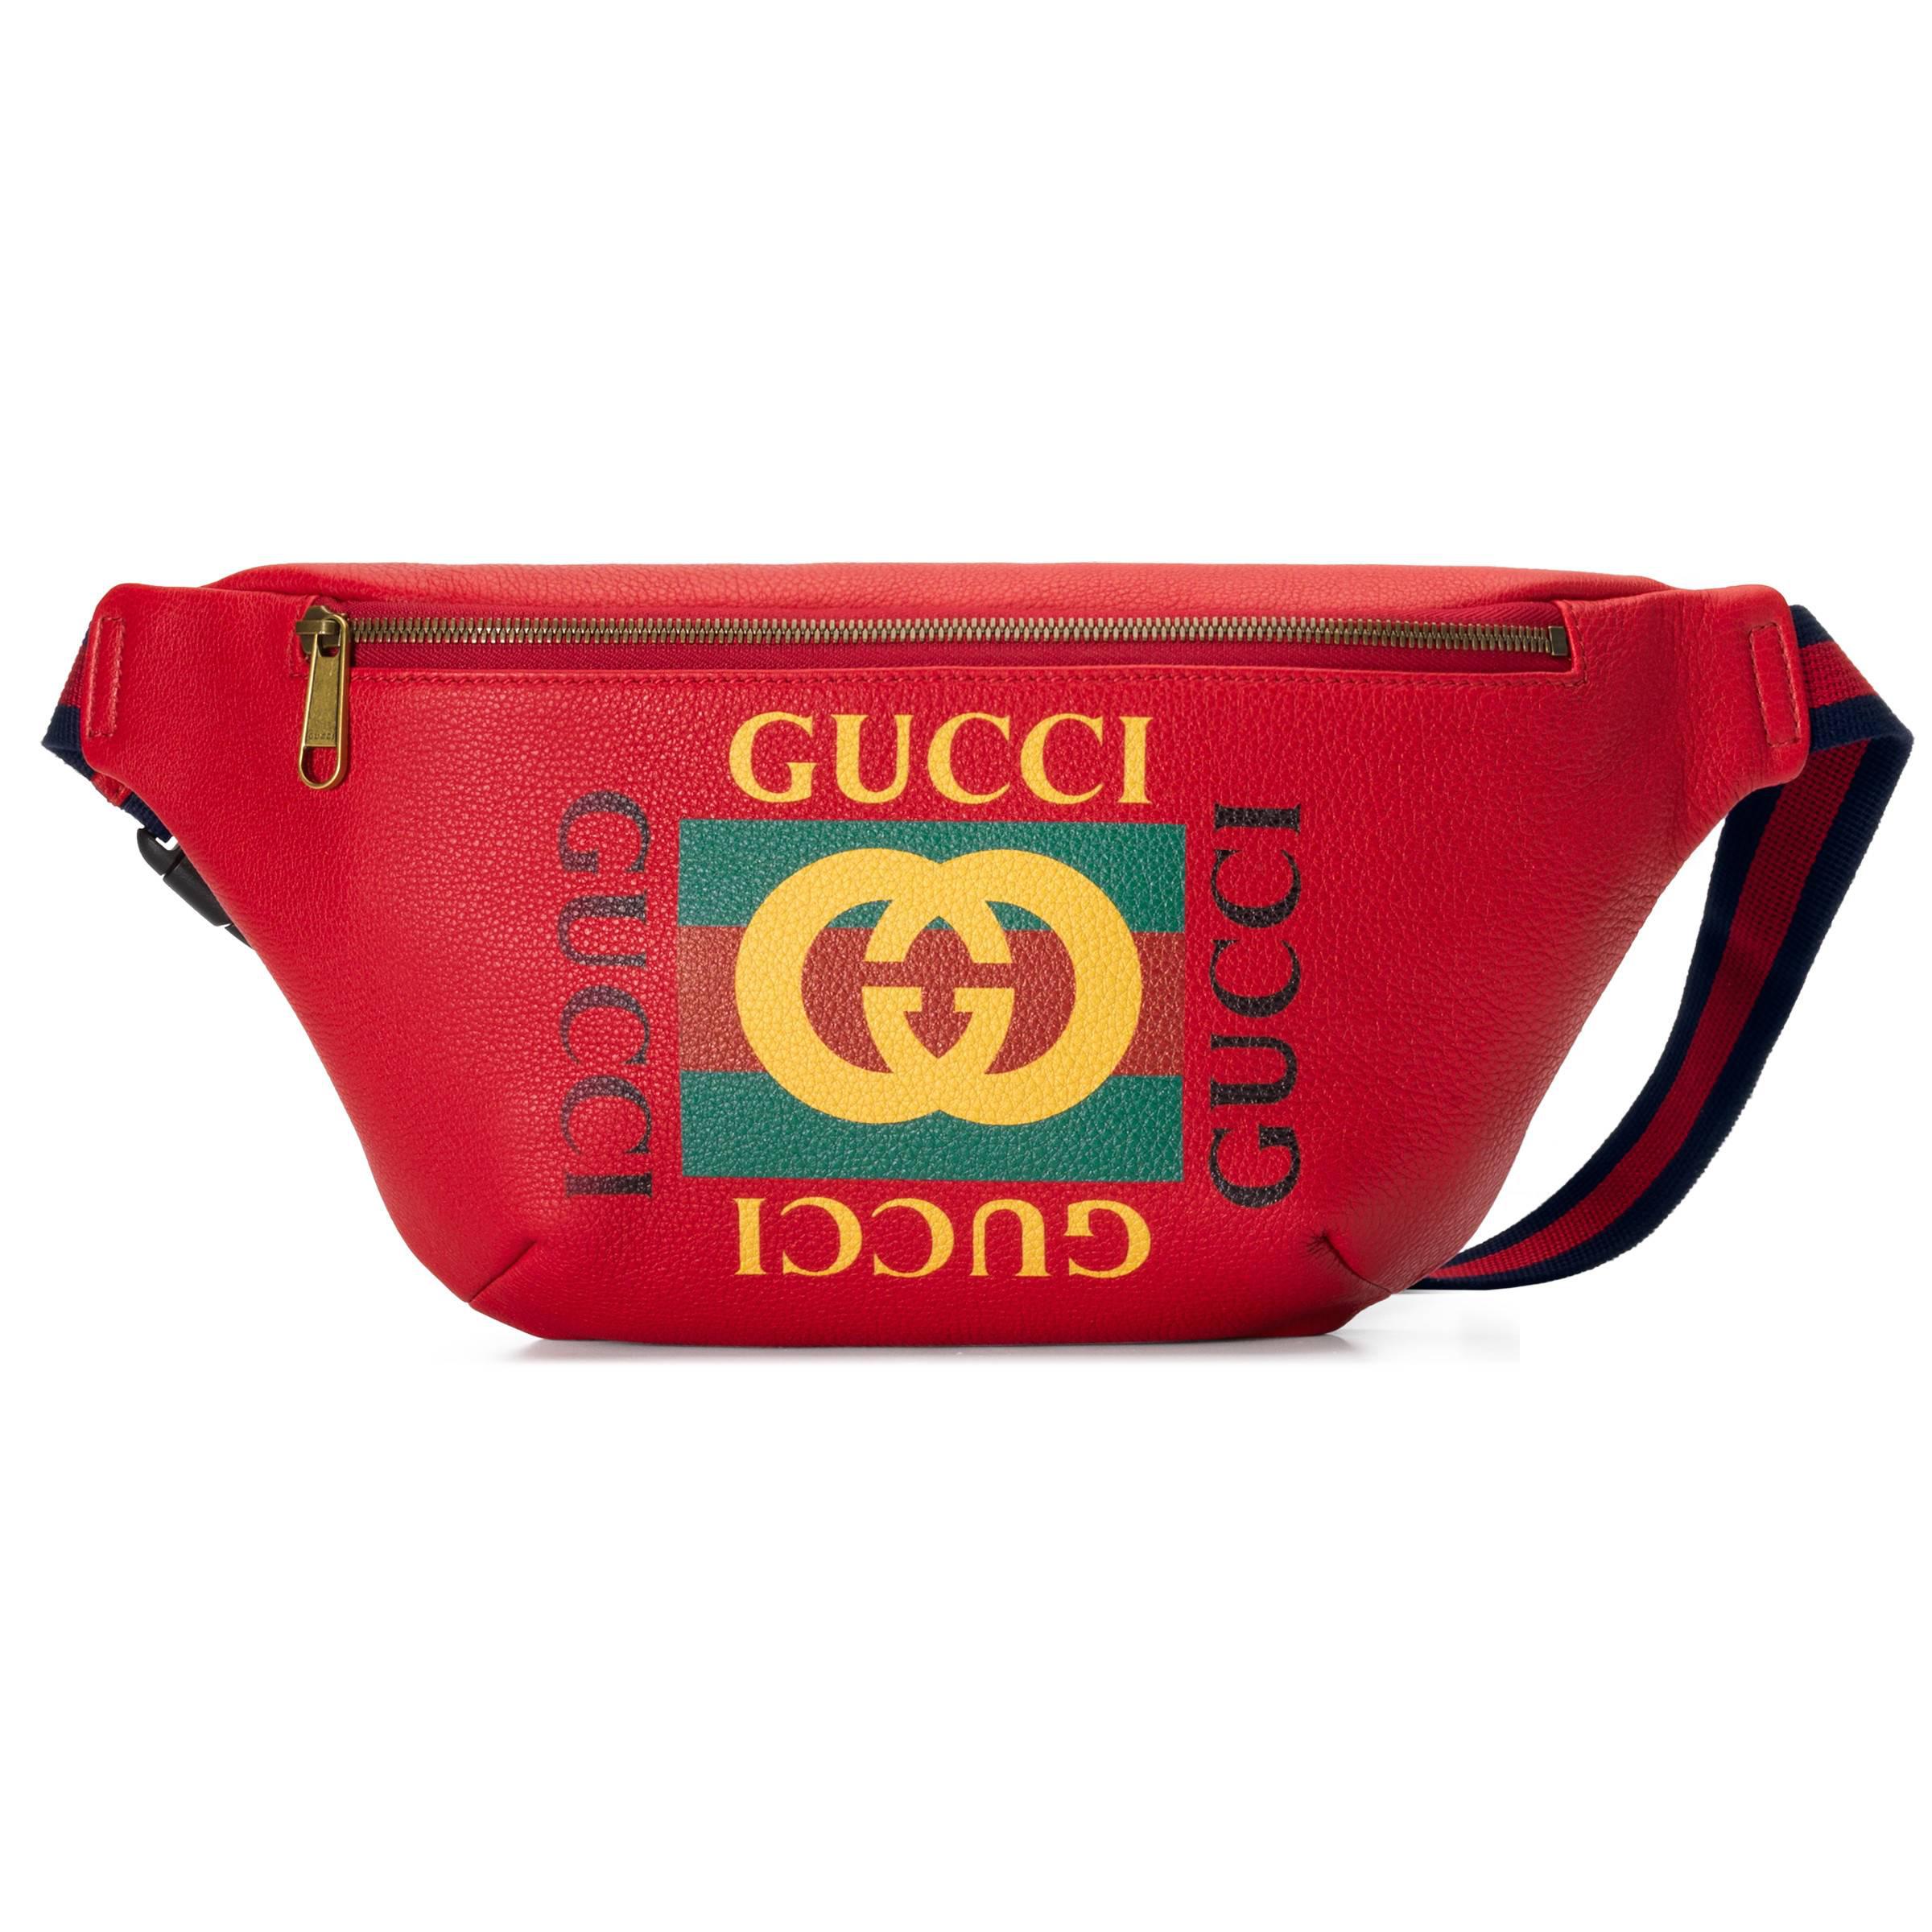 Red Gucci Waist Bag Hot Sale, 55% OFF | www.logistica360.pe